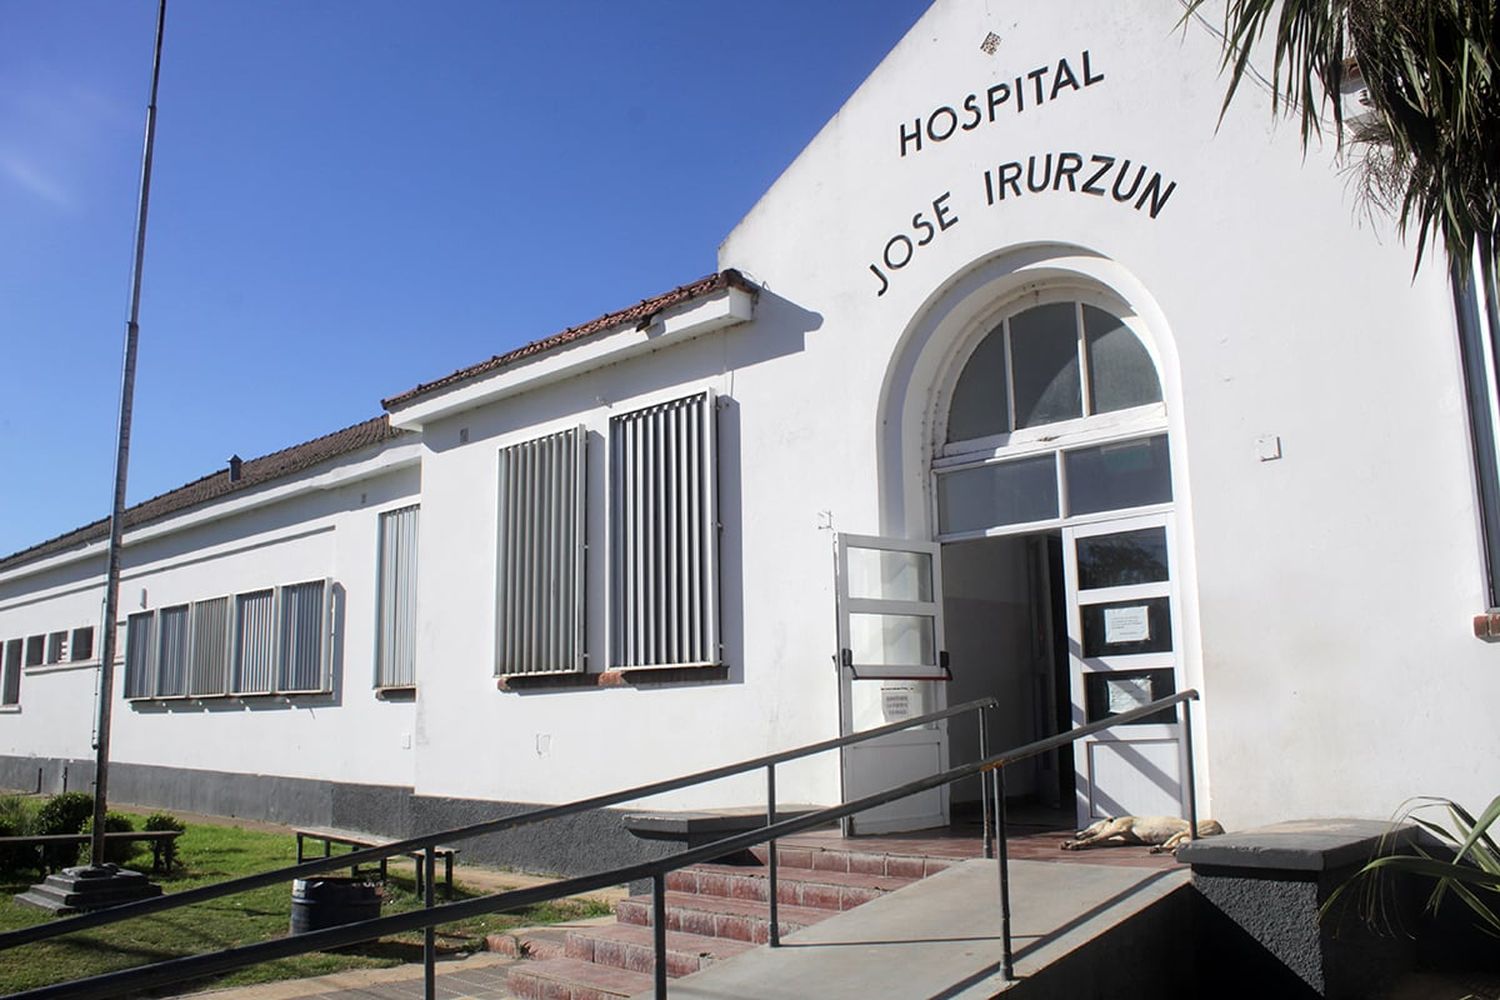 Modernizan la instalación eléctrica del hospital Irurzun